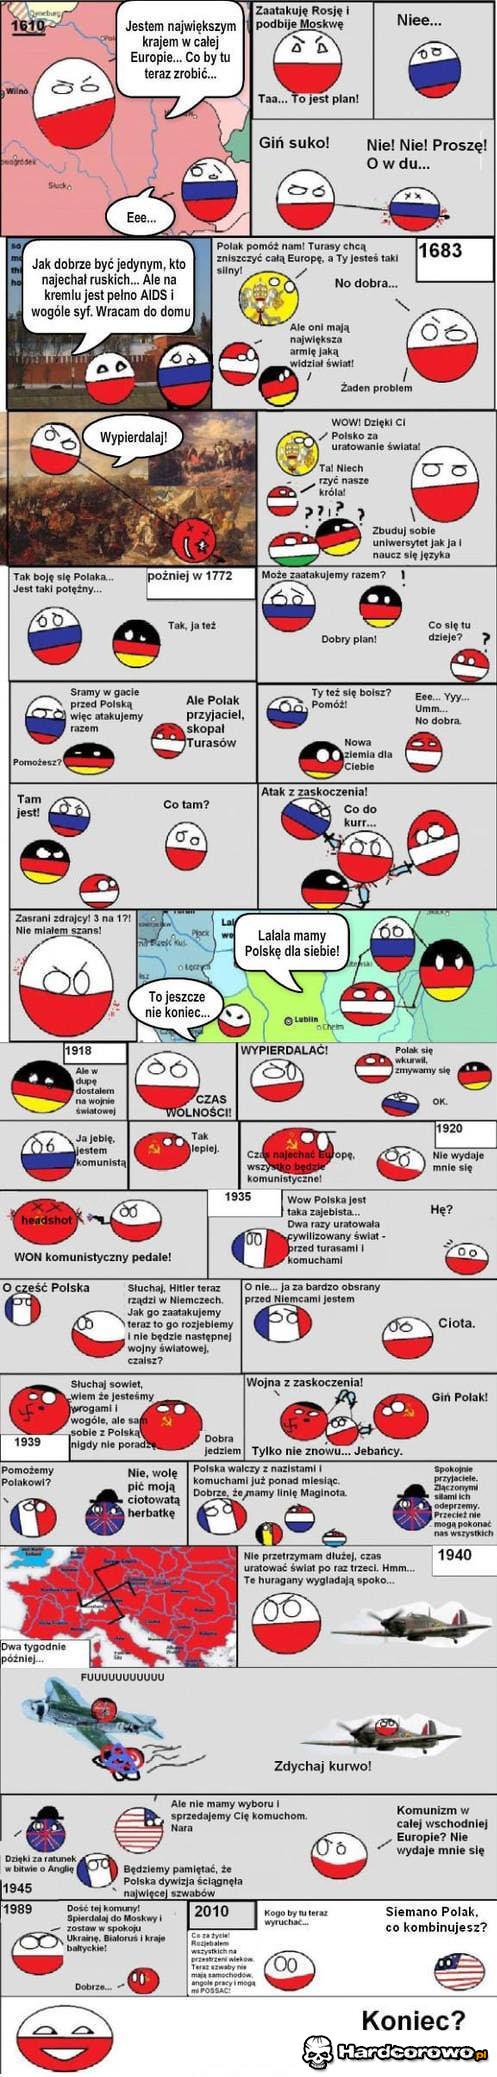 Historia Polski w pigułce - 1